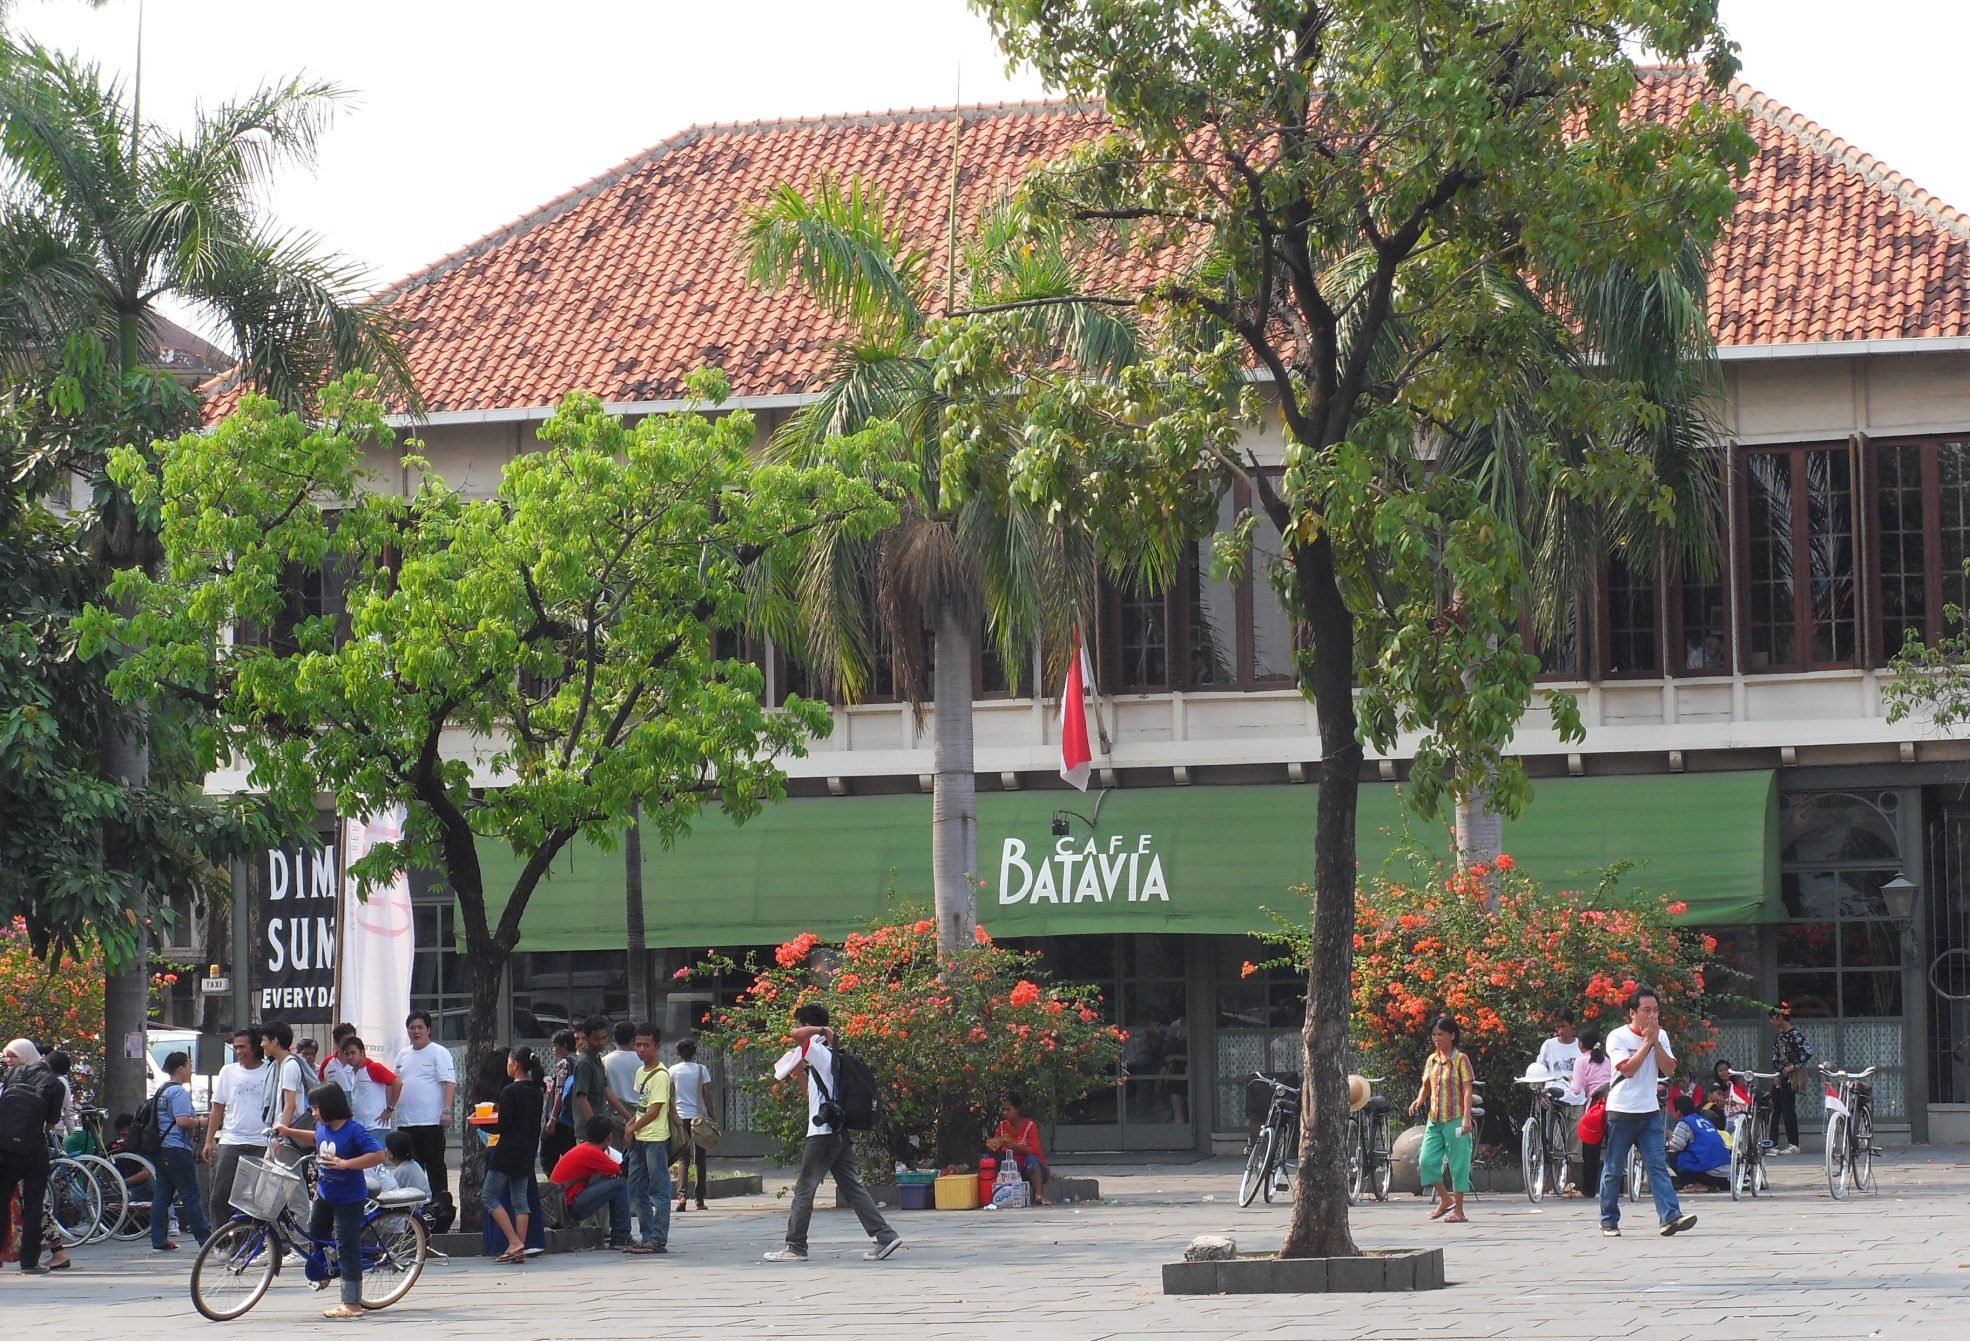 Jakarta Cafe Batavia